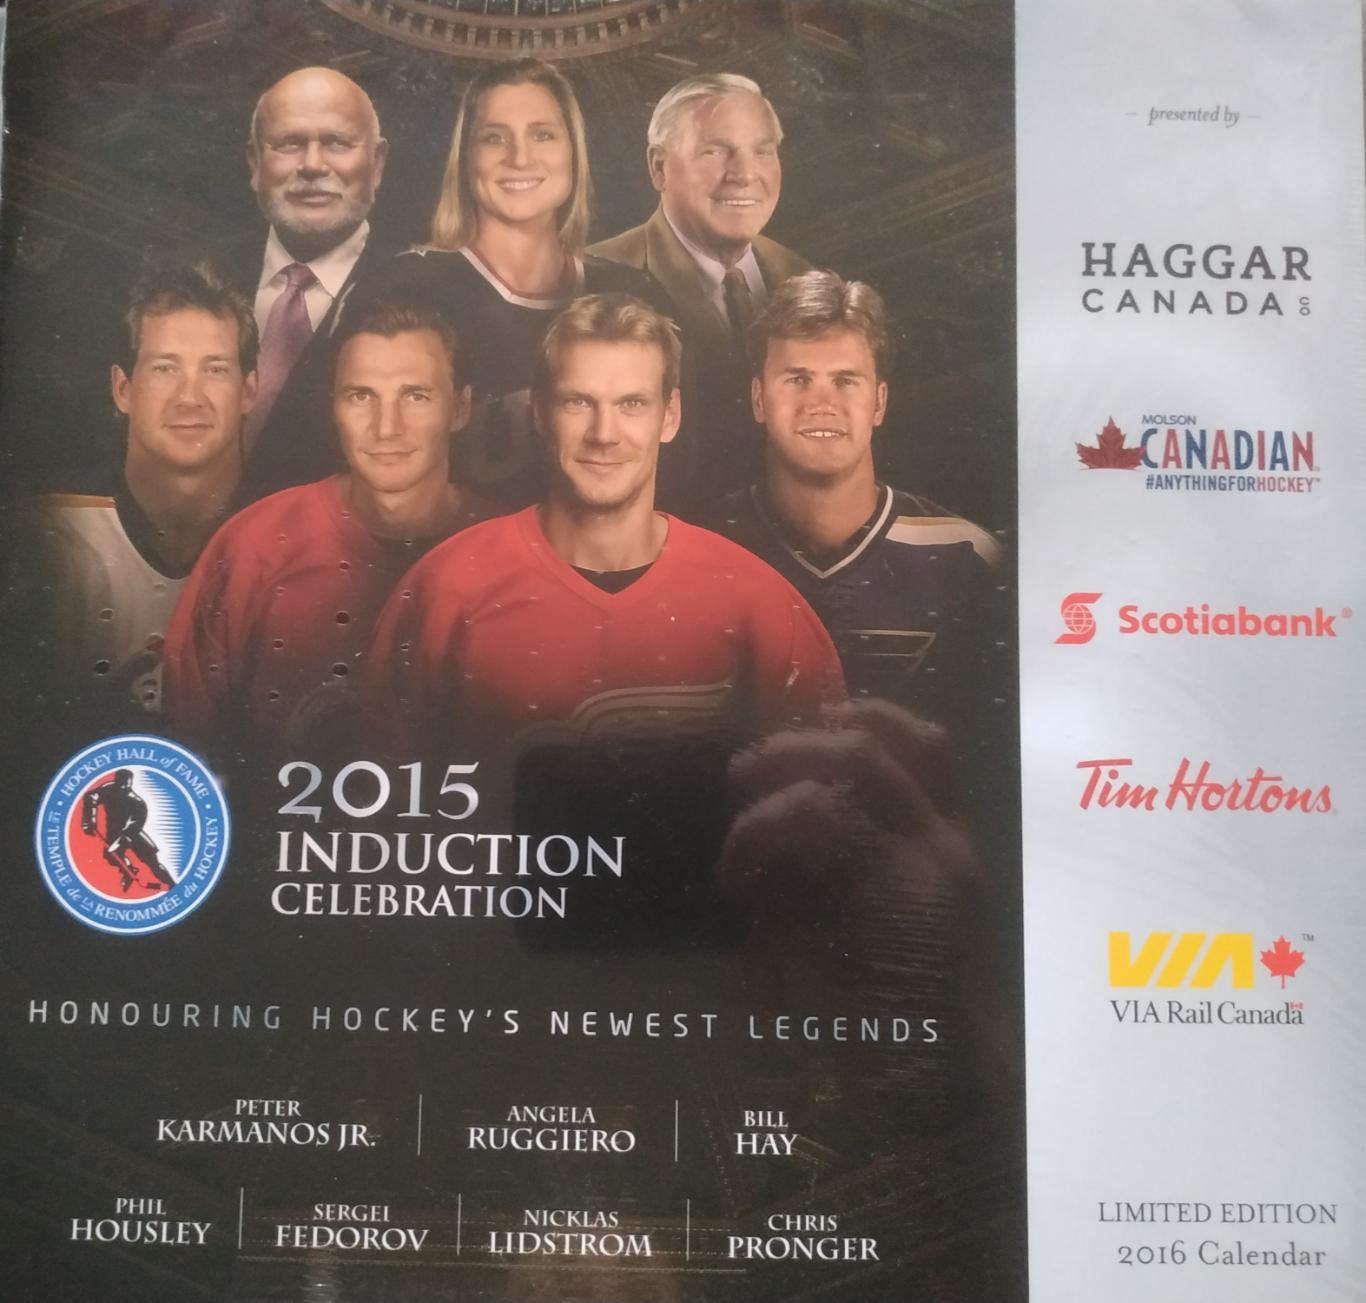 ХОККЕЙ КАЛЕНДАРЬ ЗАЛ СЛАВЫ НХЛ 2015 NHL HOCKEY HALL OF FAME OFFICIAL CALENDAR